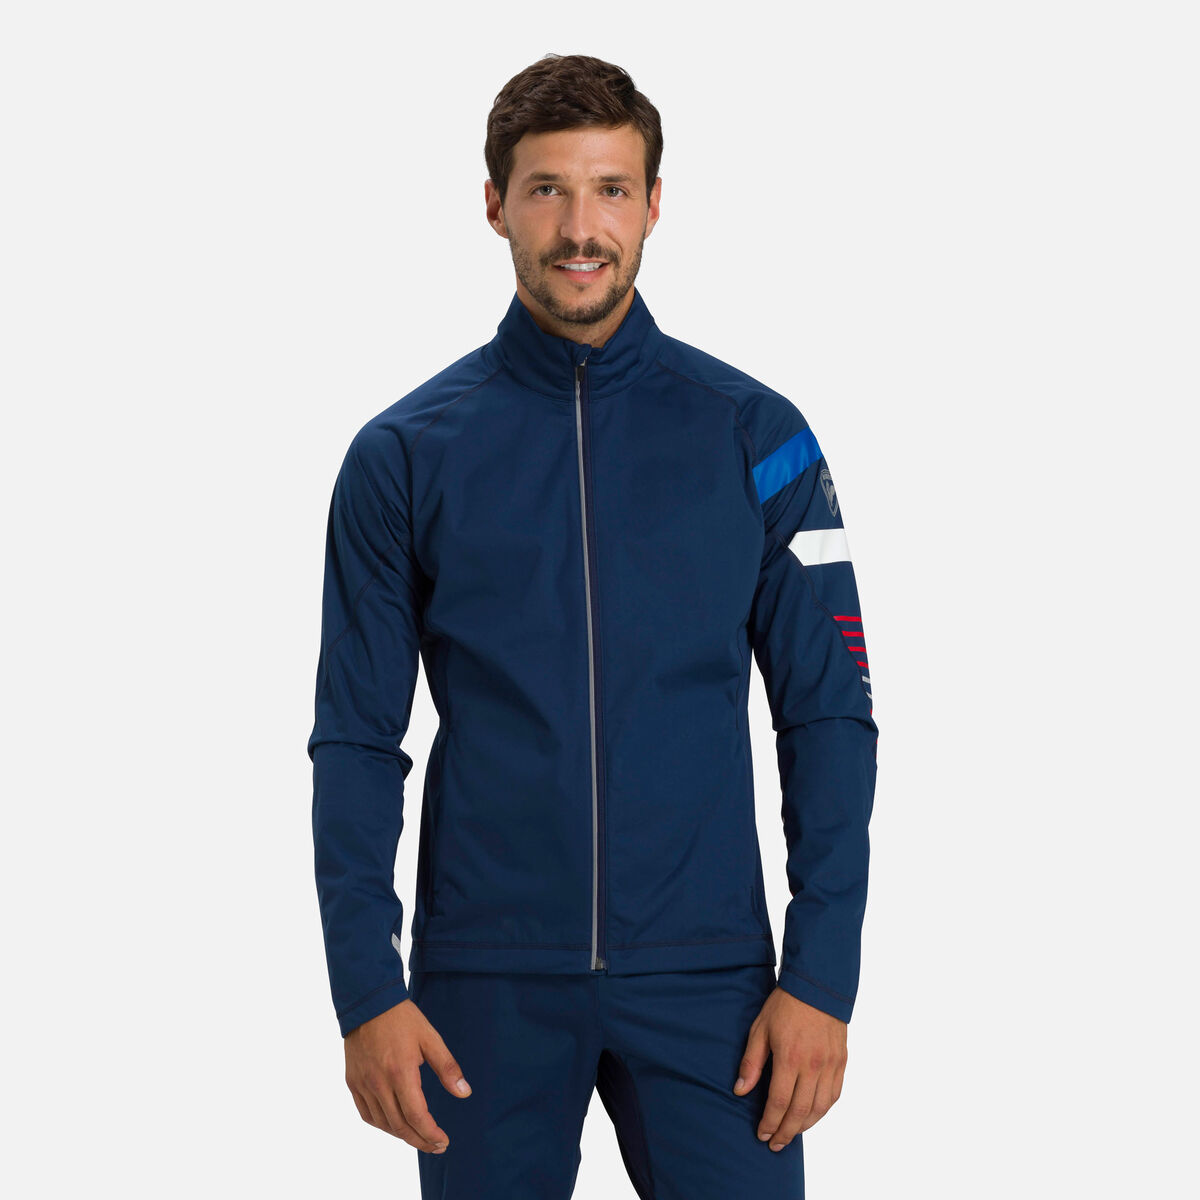 Men's Poursuite nordic ski jacket